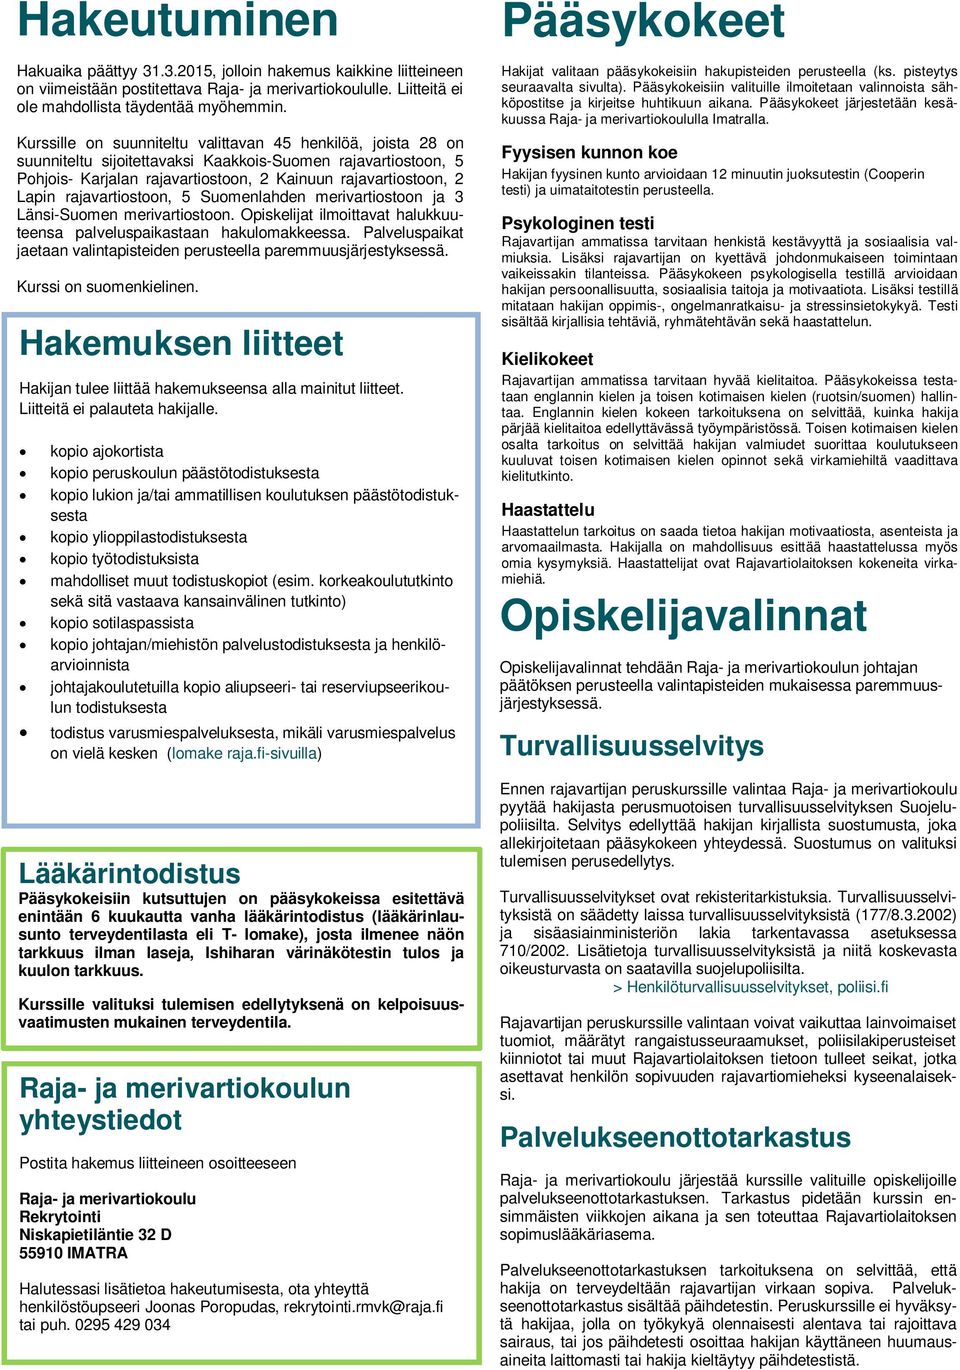 rajavartiostoon, 5 Suomenlahden merivartiostoon ja 3 Länsi-Suomen merivartiostoon. Opiskelijat ilmoittavat halukkuuteensa palveluspaikastaan hakulomakkeessa.